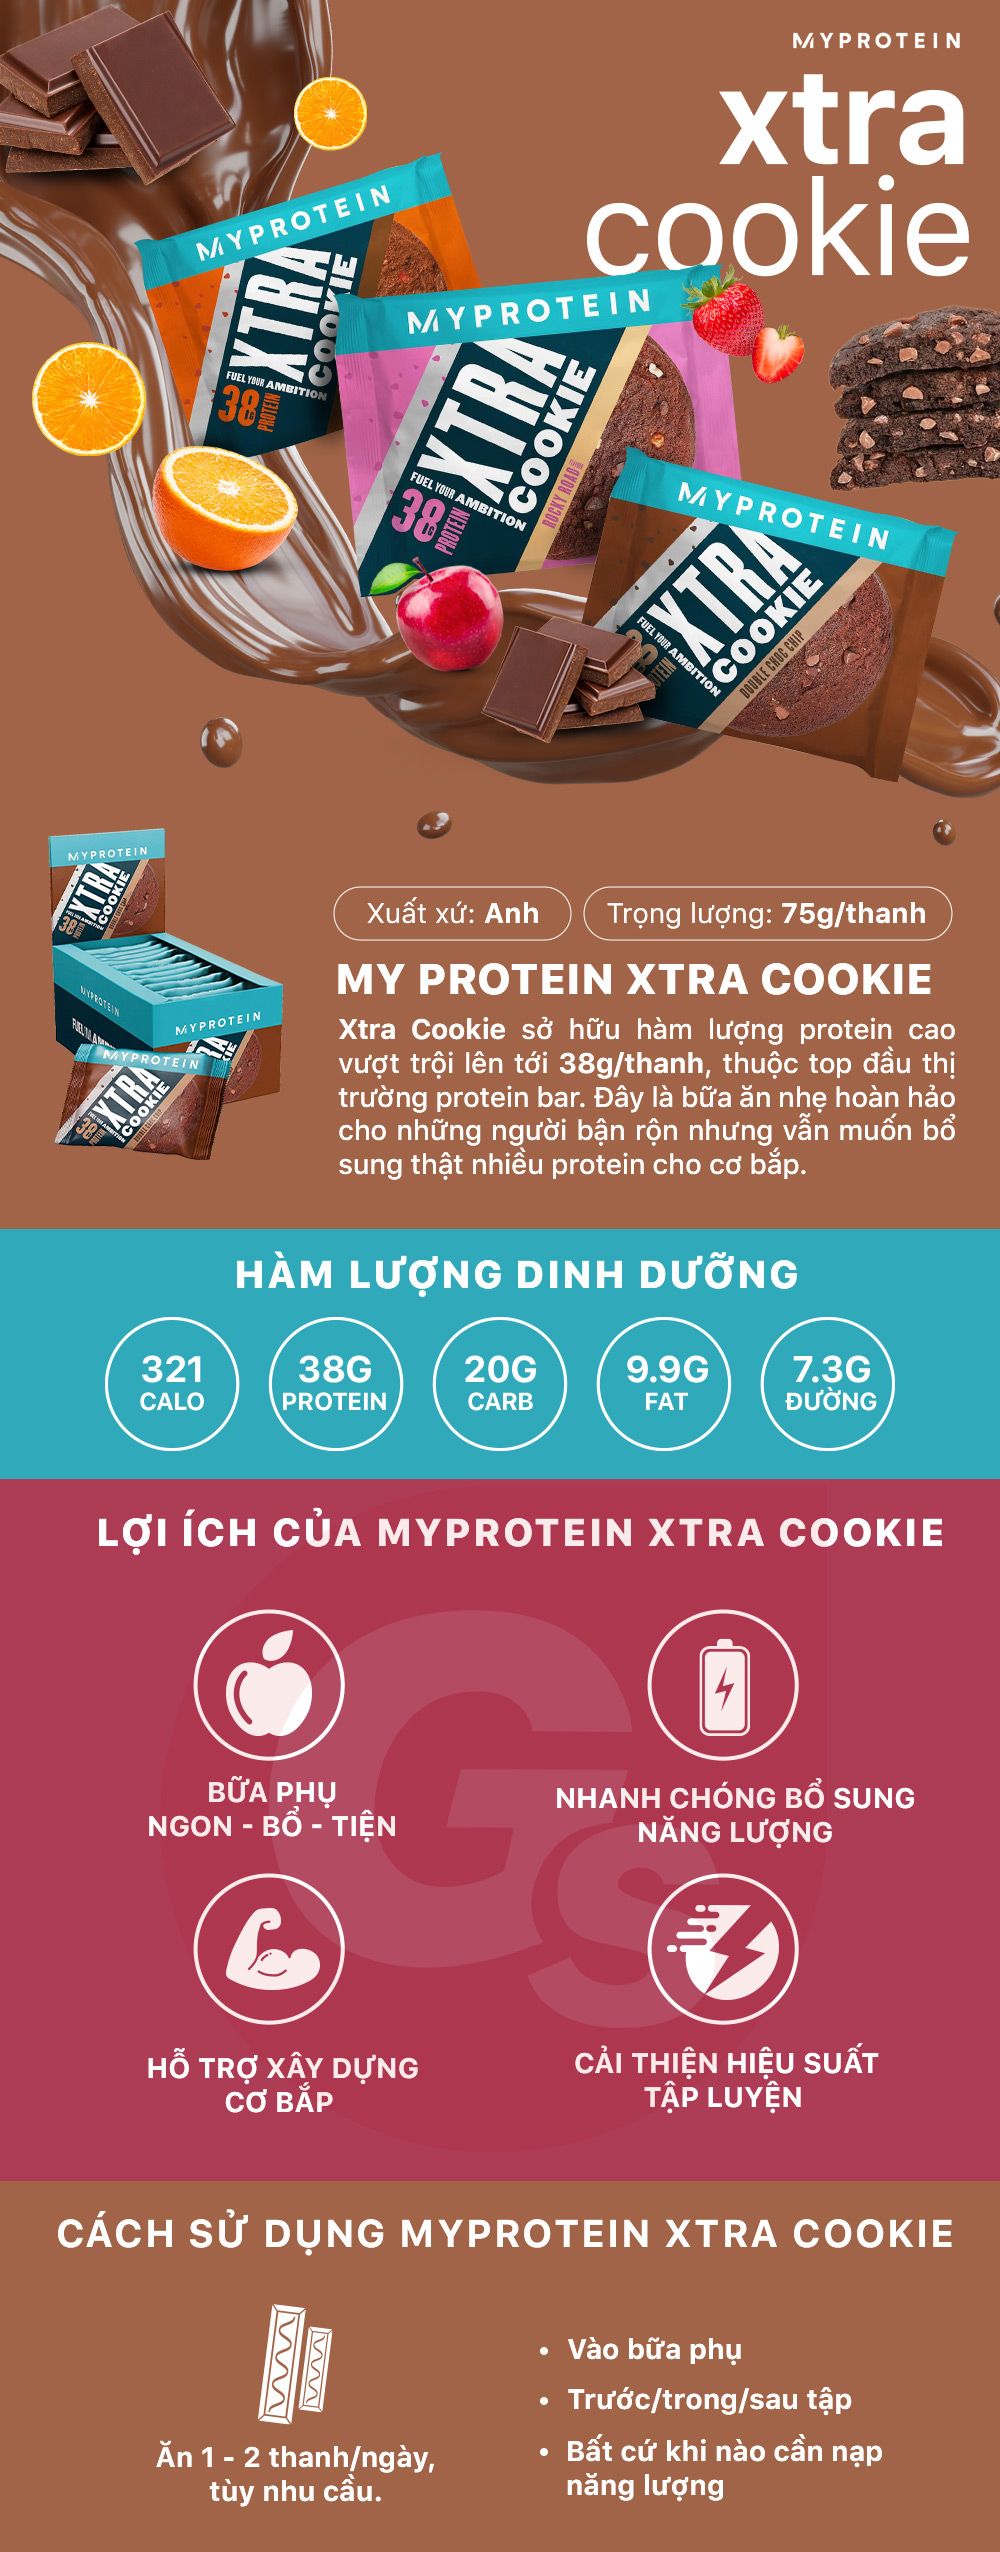 myprotein-xtra-cookie-gymstore